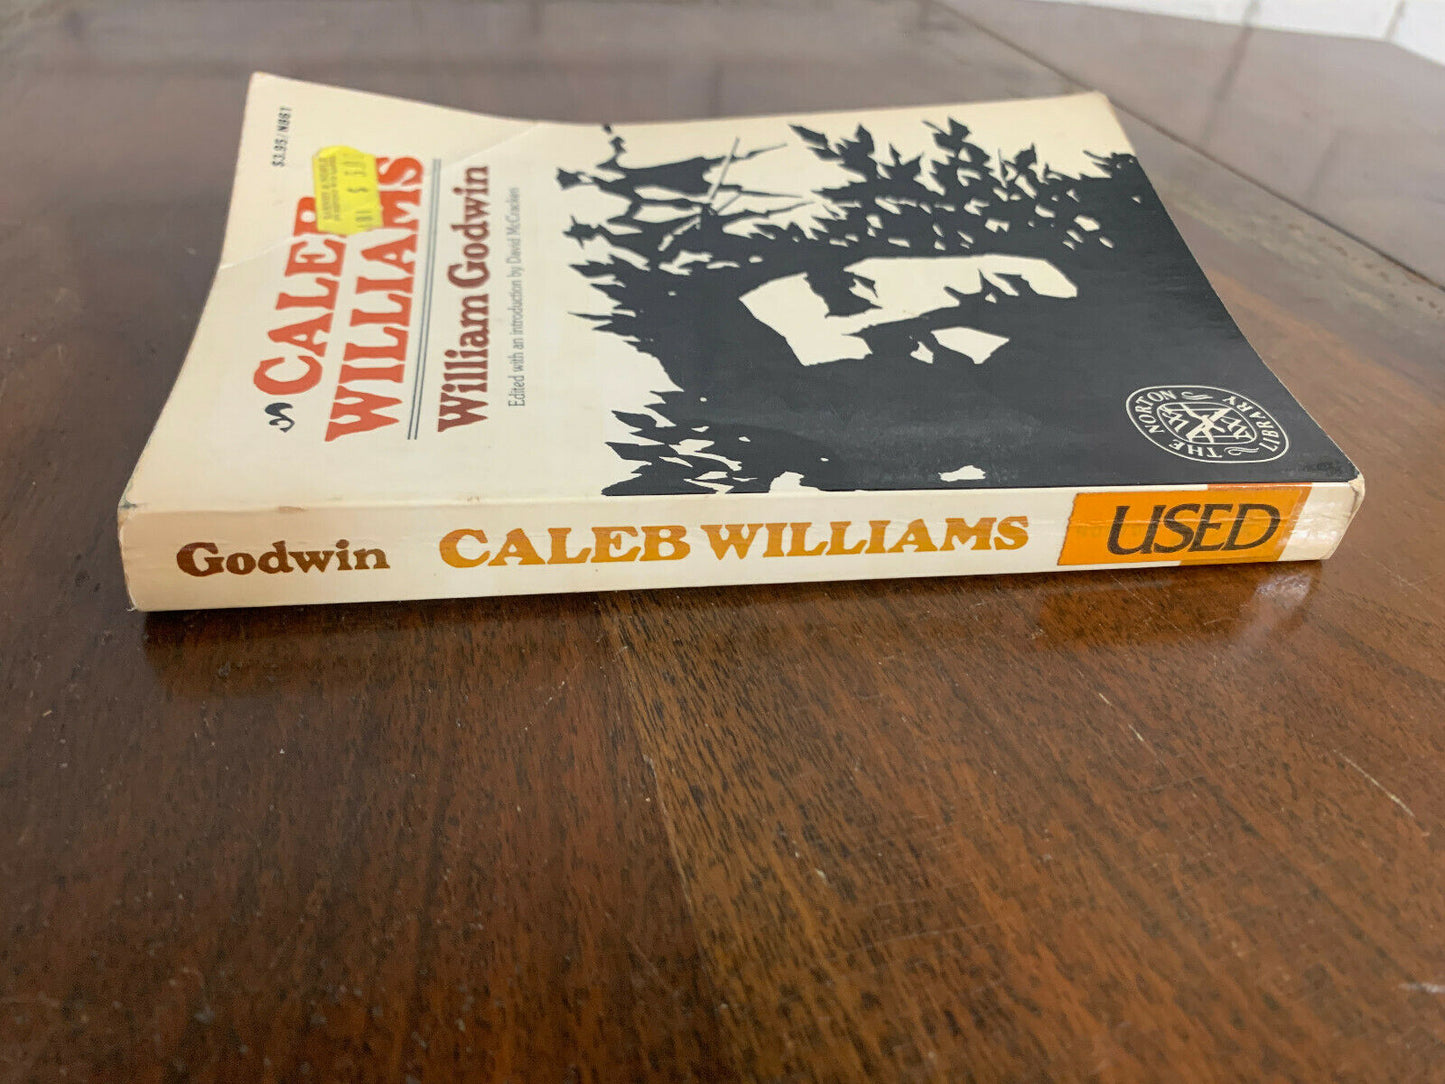 Caleb Williams by William Godwin The Norton Library 1977 (O6)